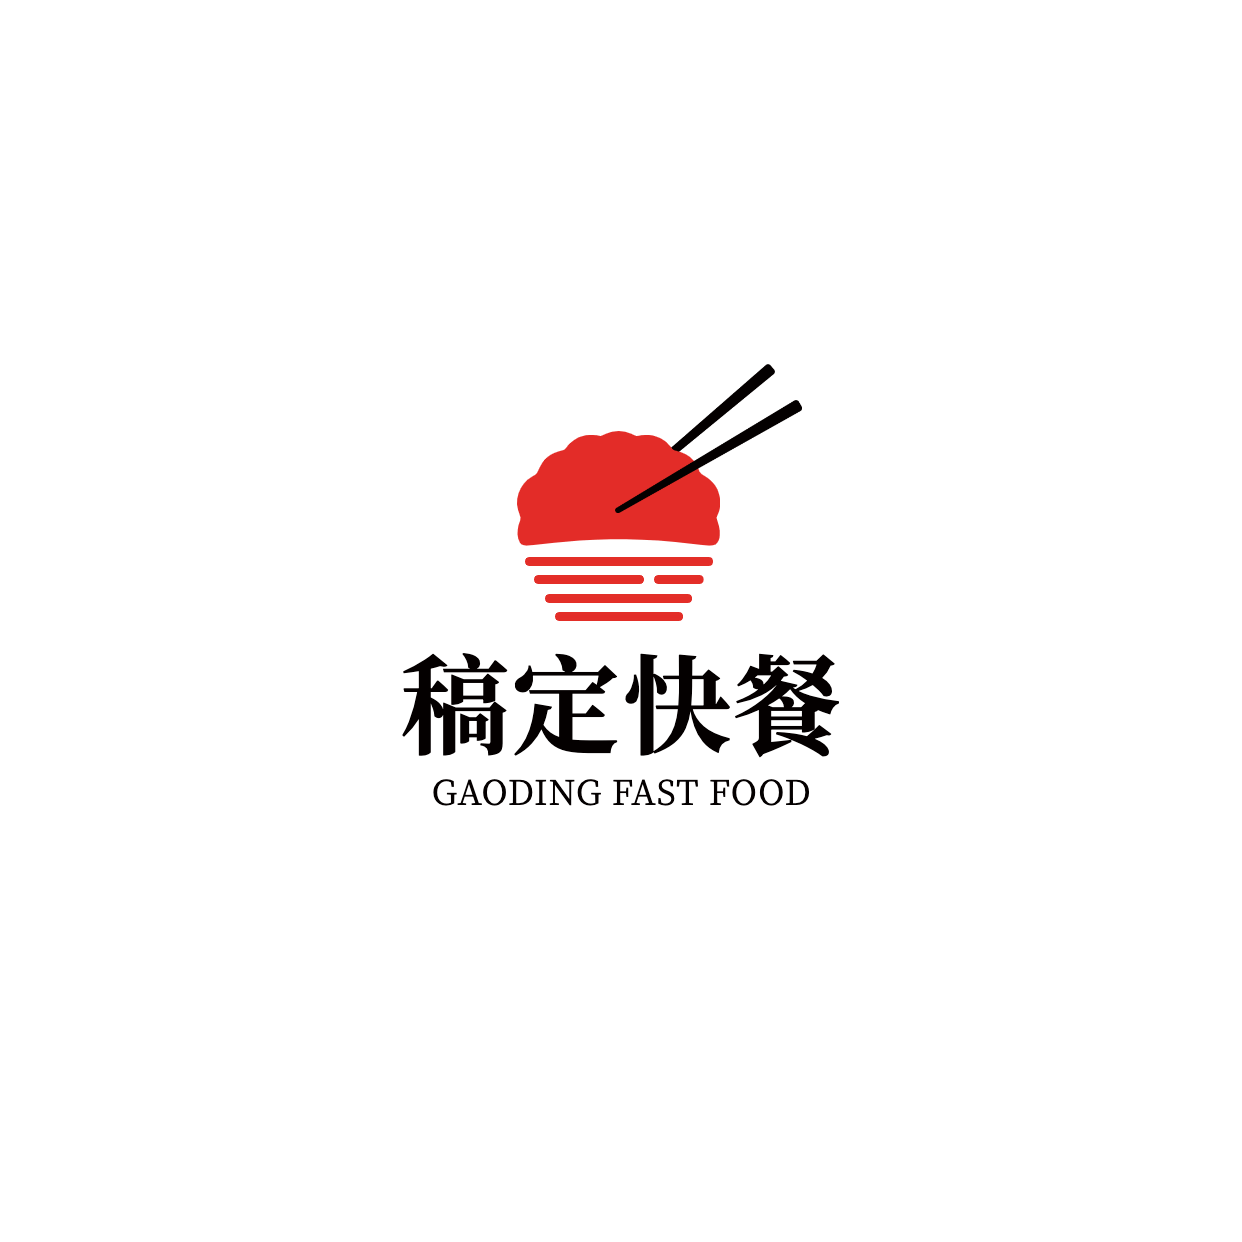 中餐正餐品牌宣传简约LOGO图形预览效果